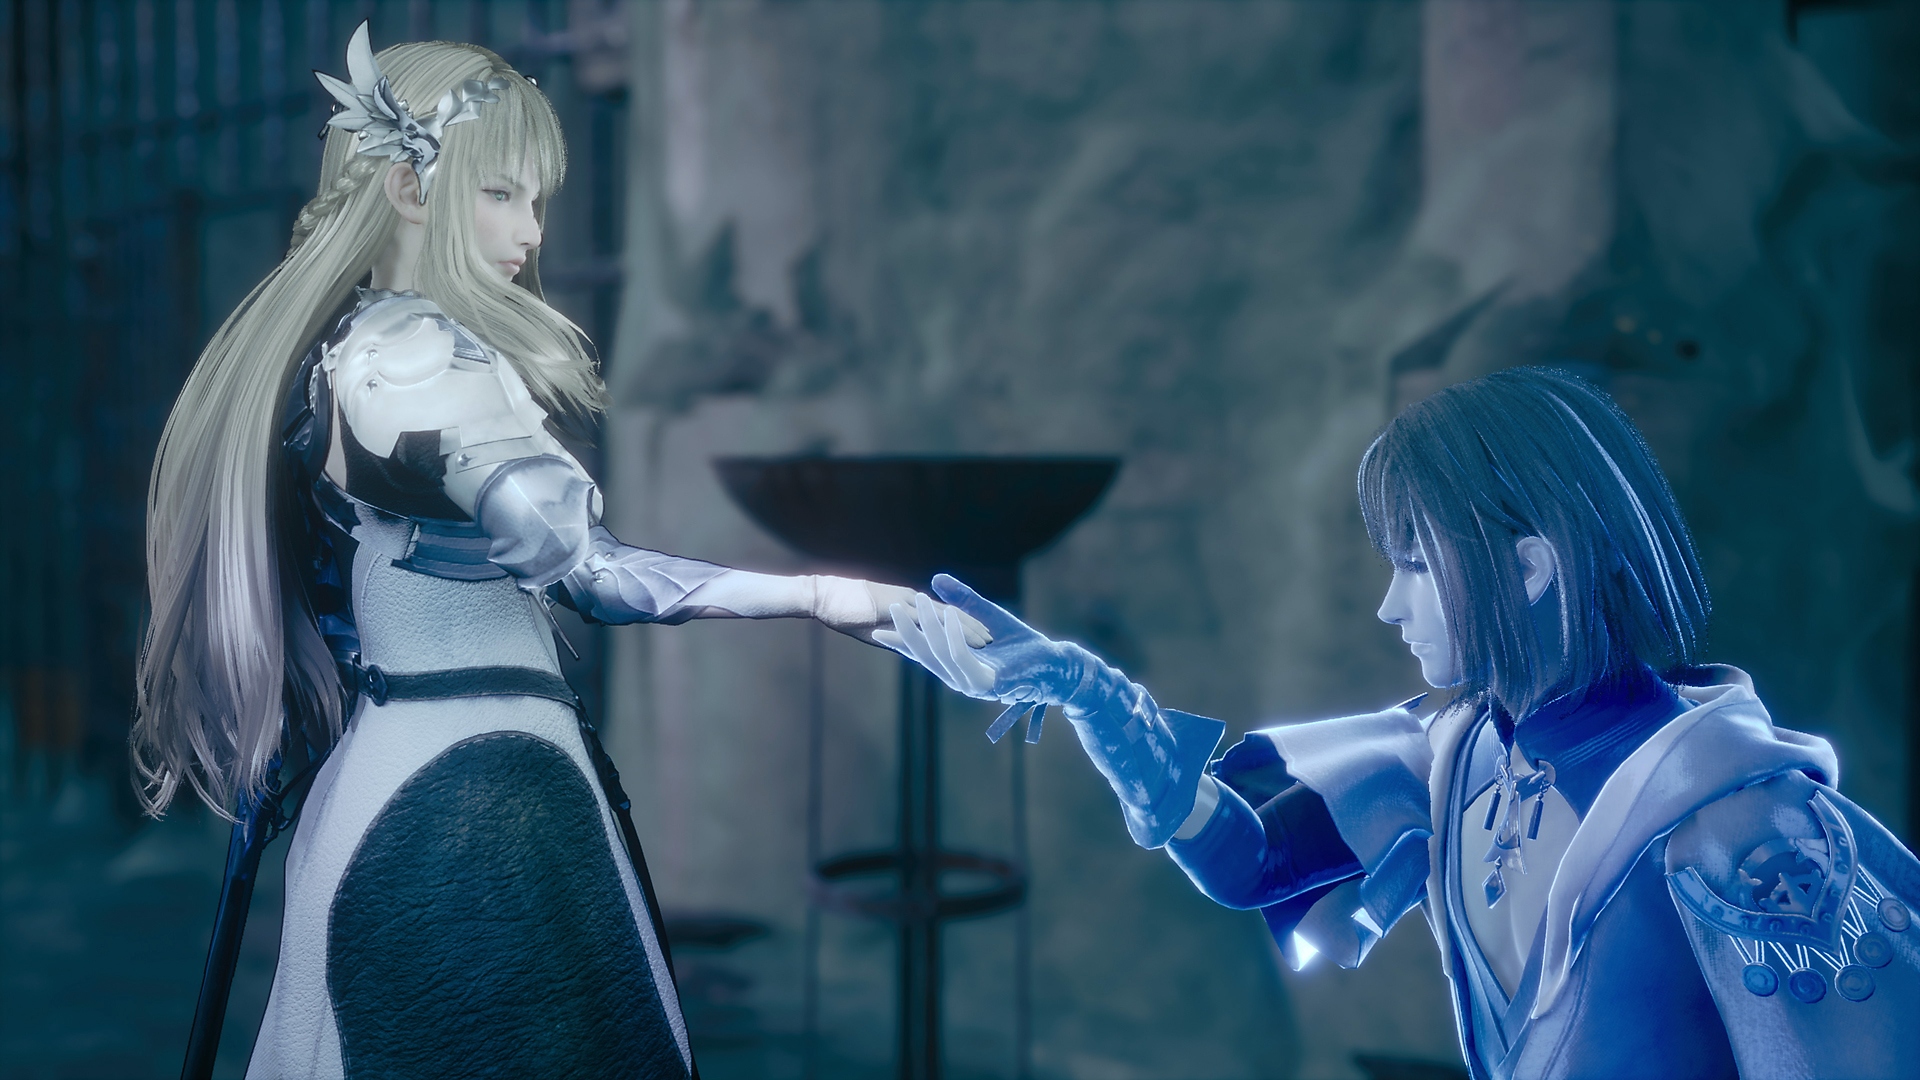 Valkyrie Elysium – zrzut ekranu przedstawiający niebieskiego, świecącego rycerza, klęczącego przed księżniczką